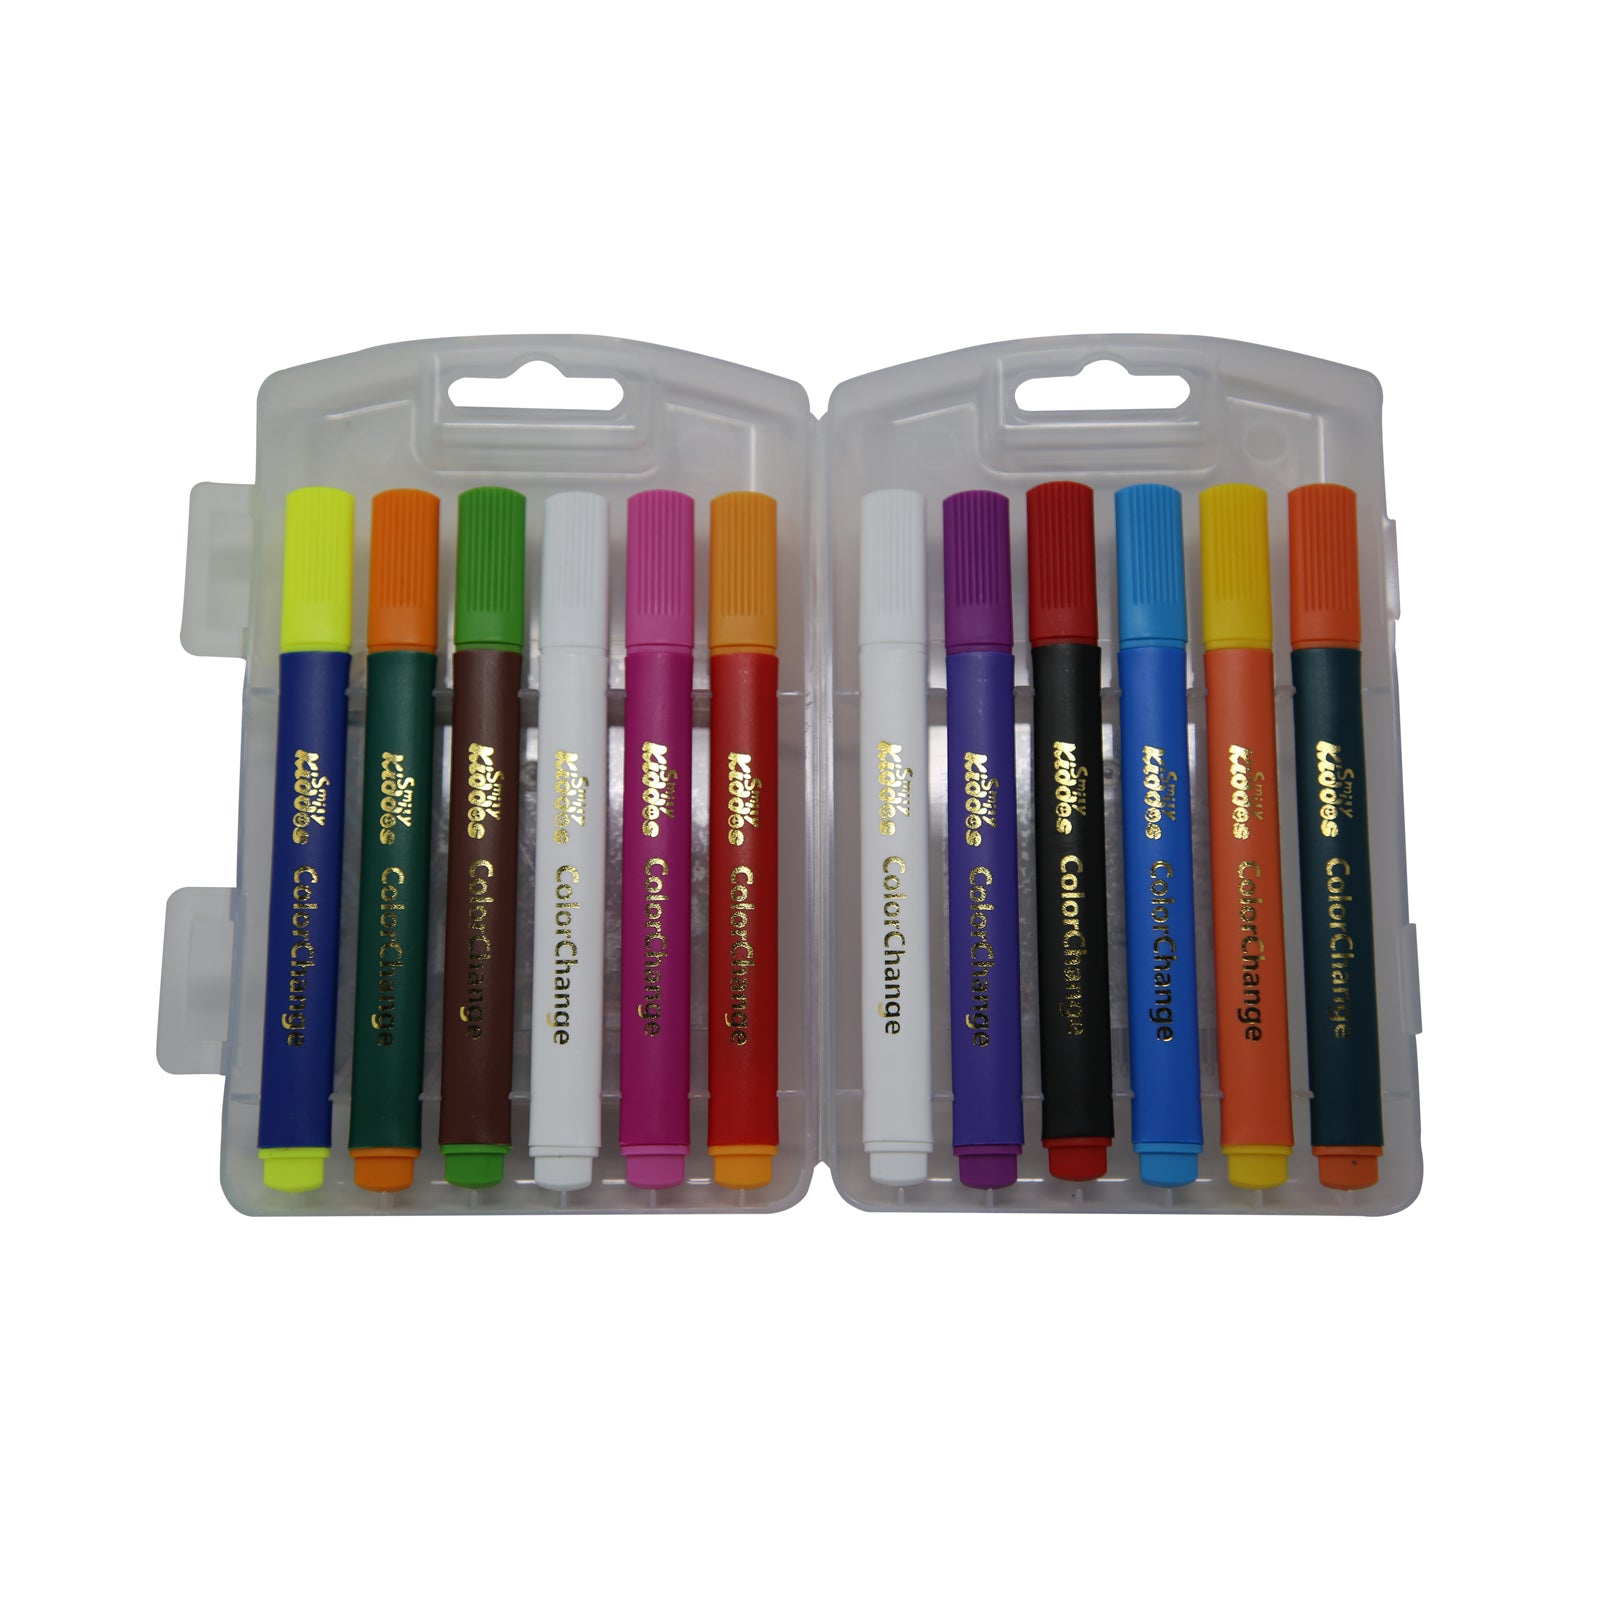 Smily Kiddos Magic Colour Change Pen